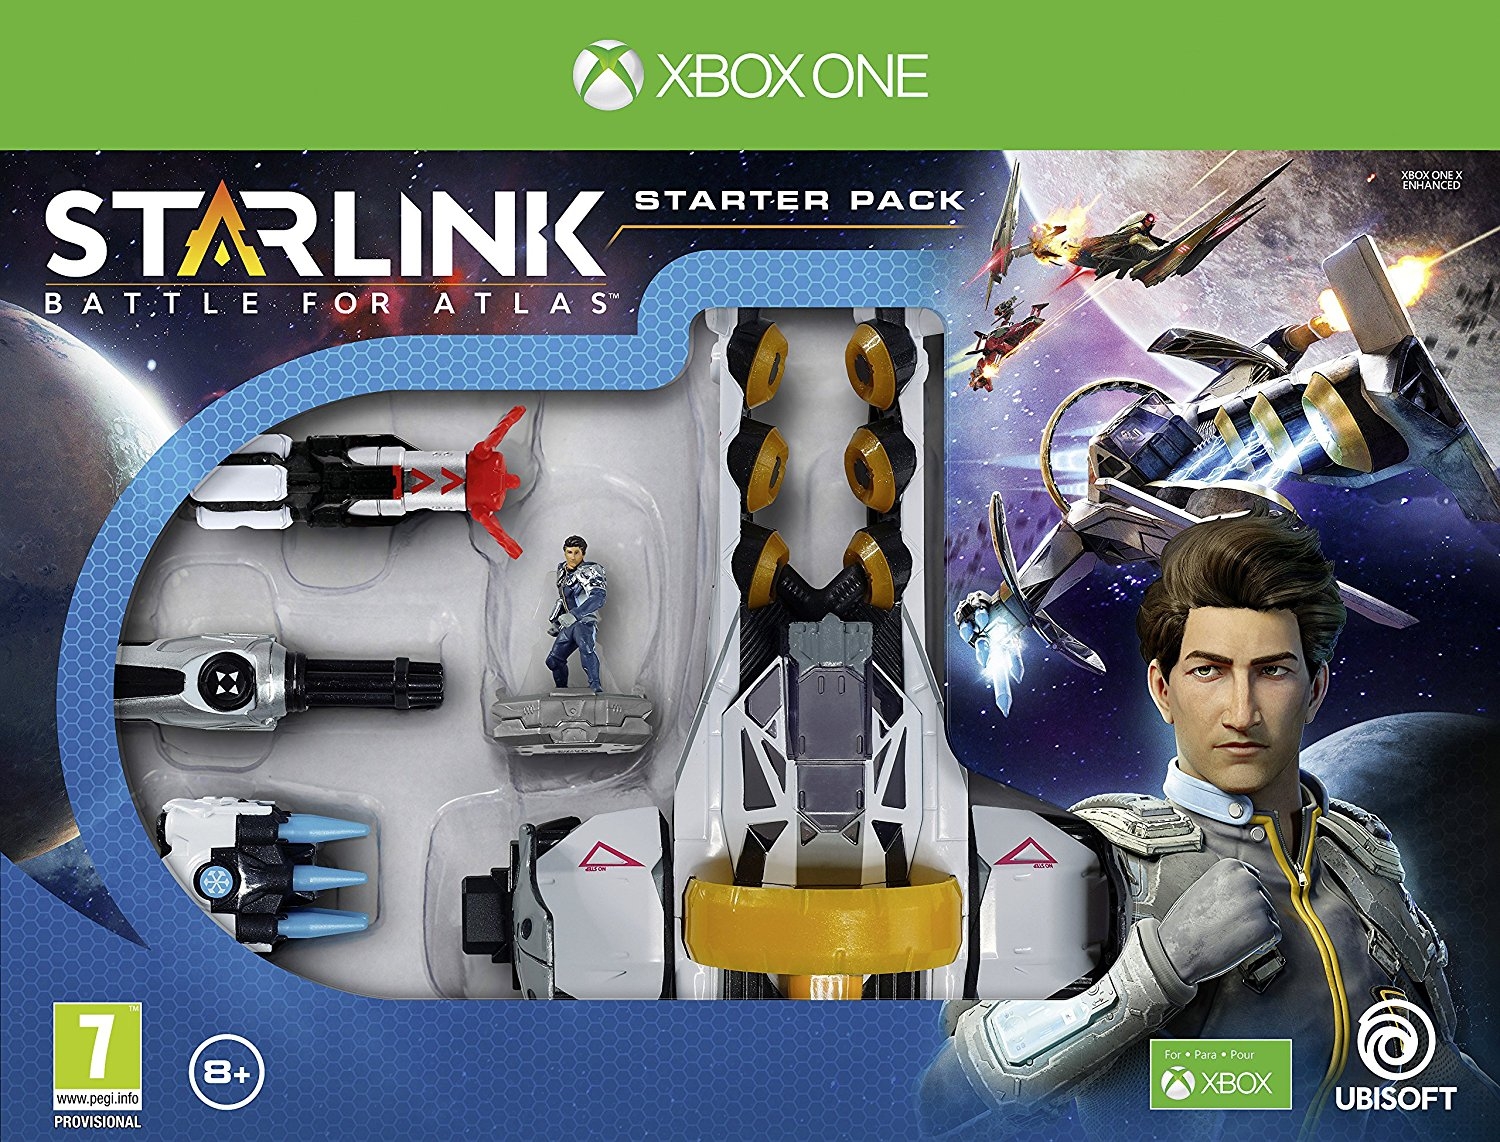 XBOXOne Starlink: Battle for Atlas Starter Pack